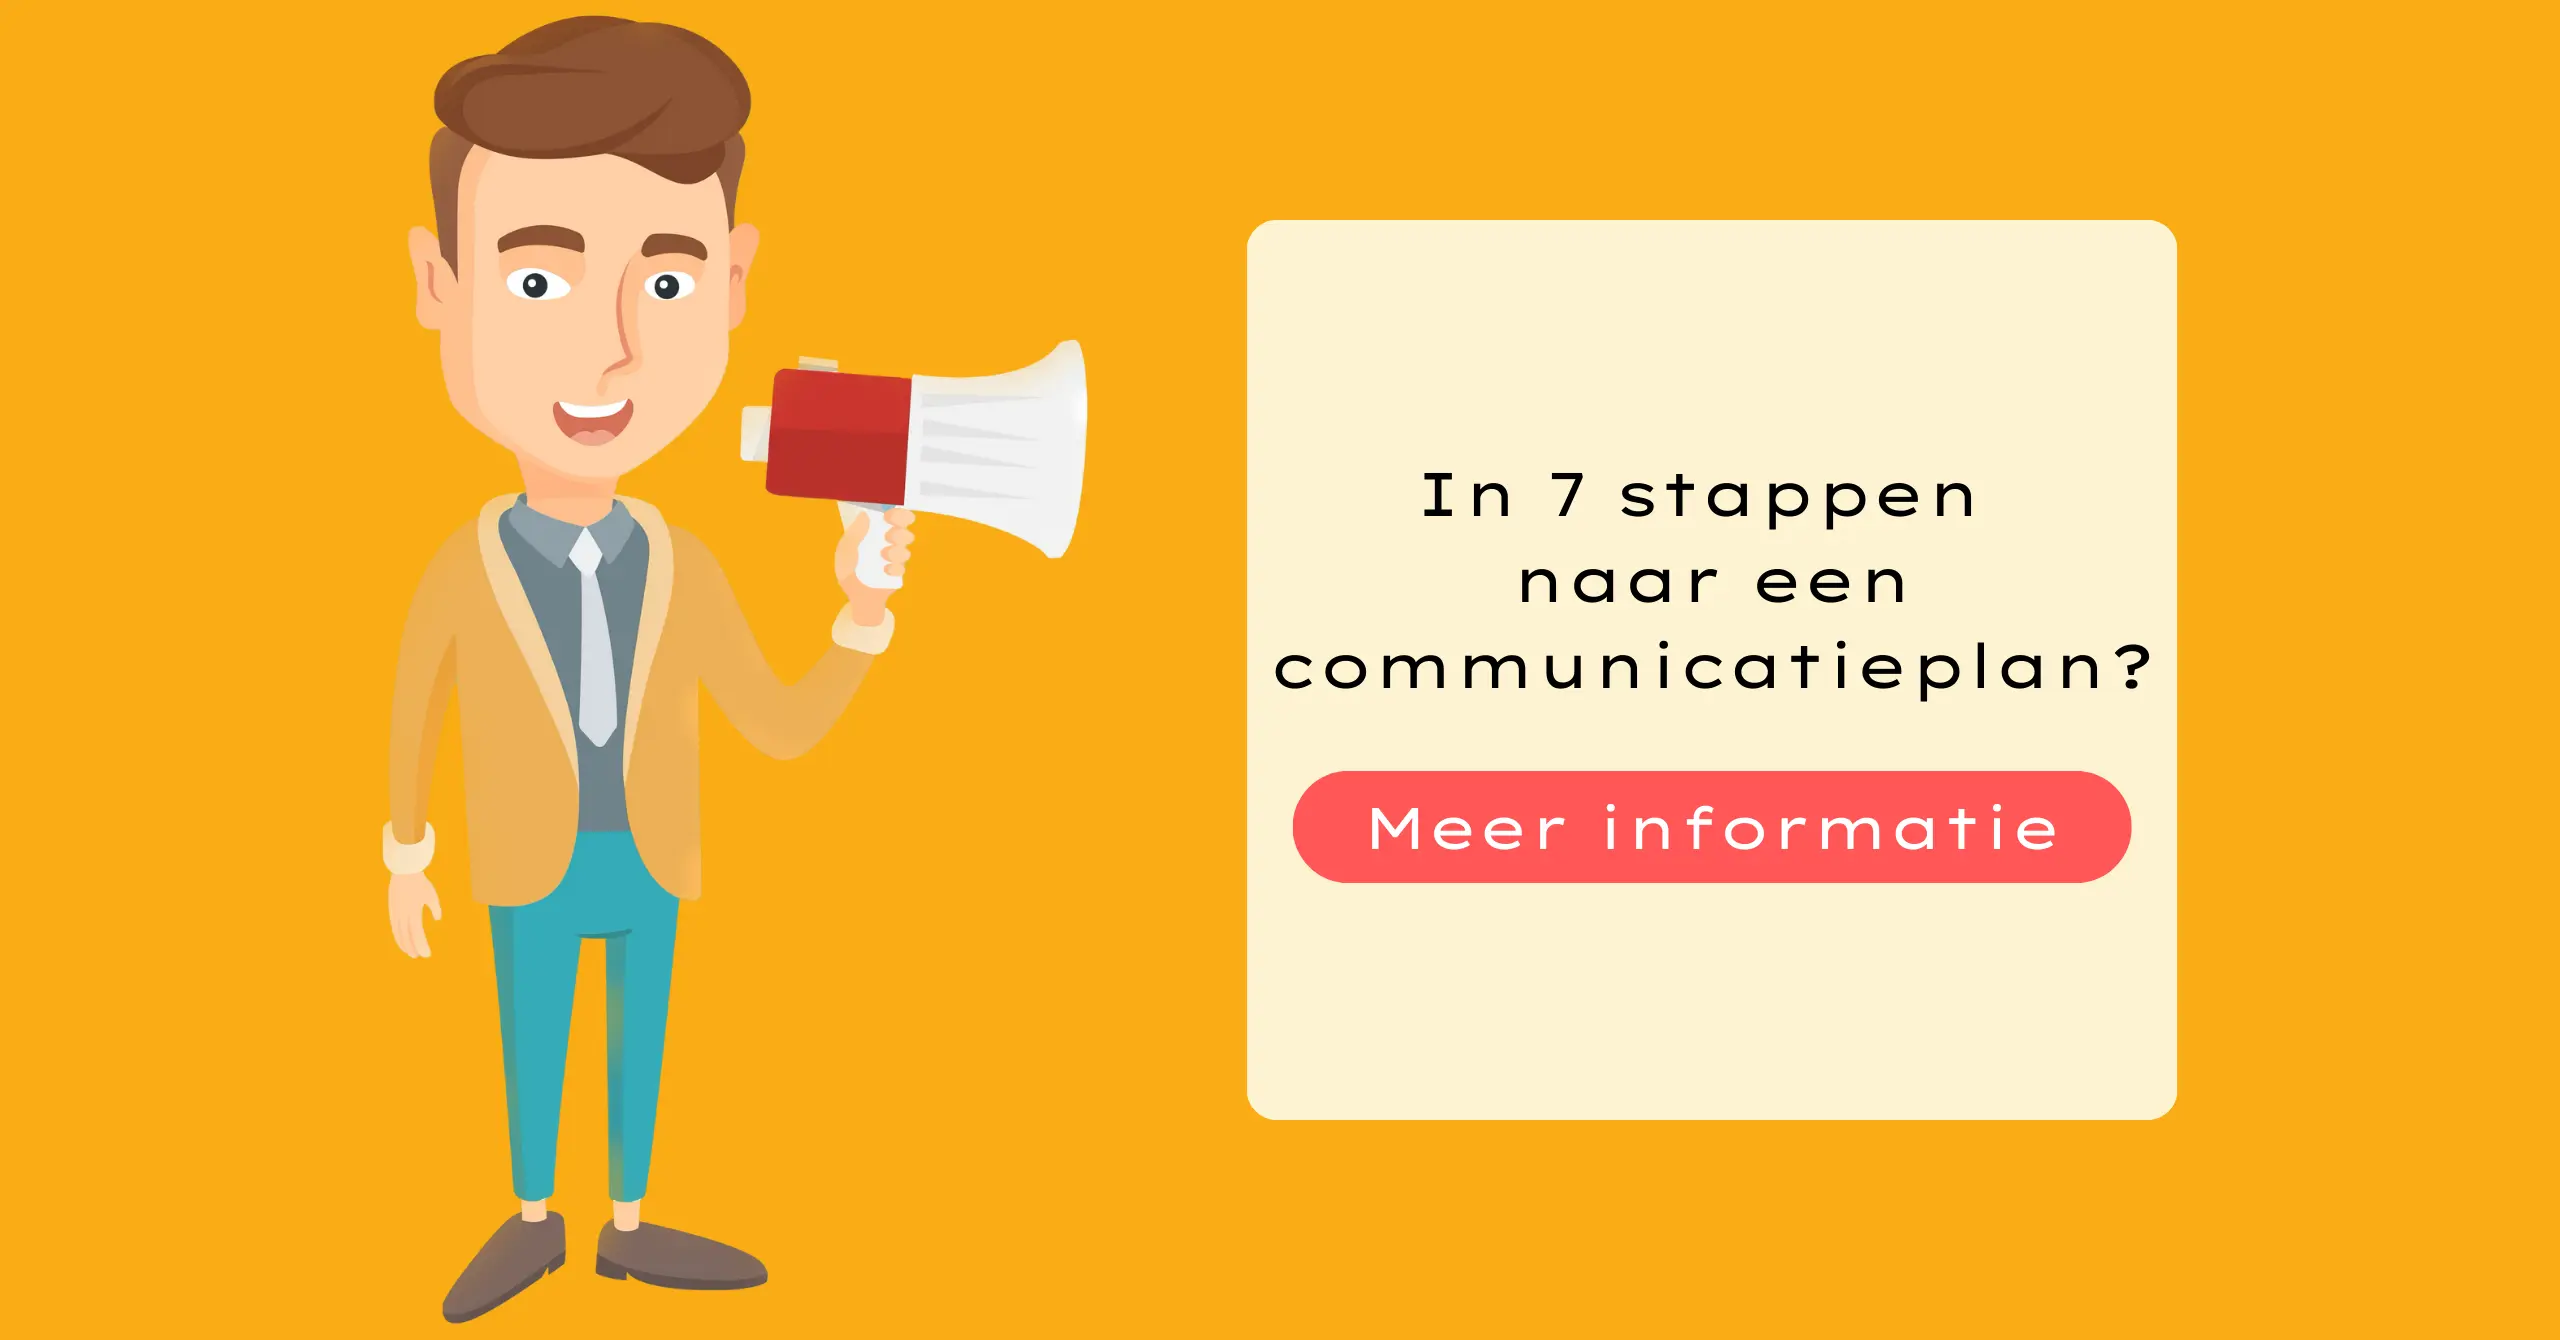 In 7 stappen naar een communicatieplan?